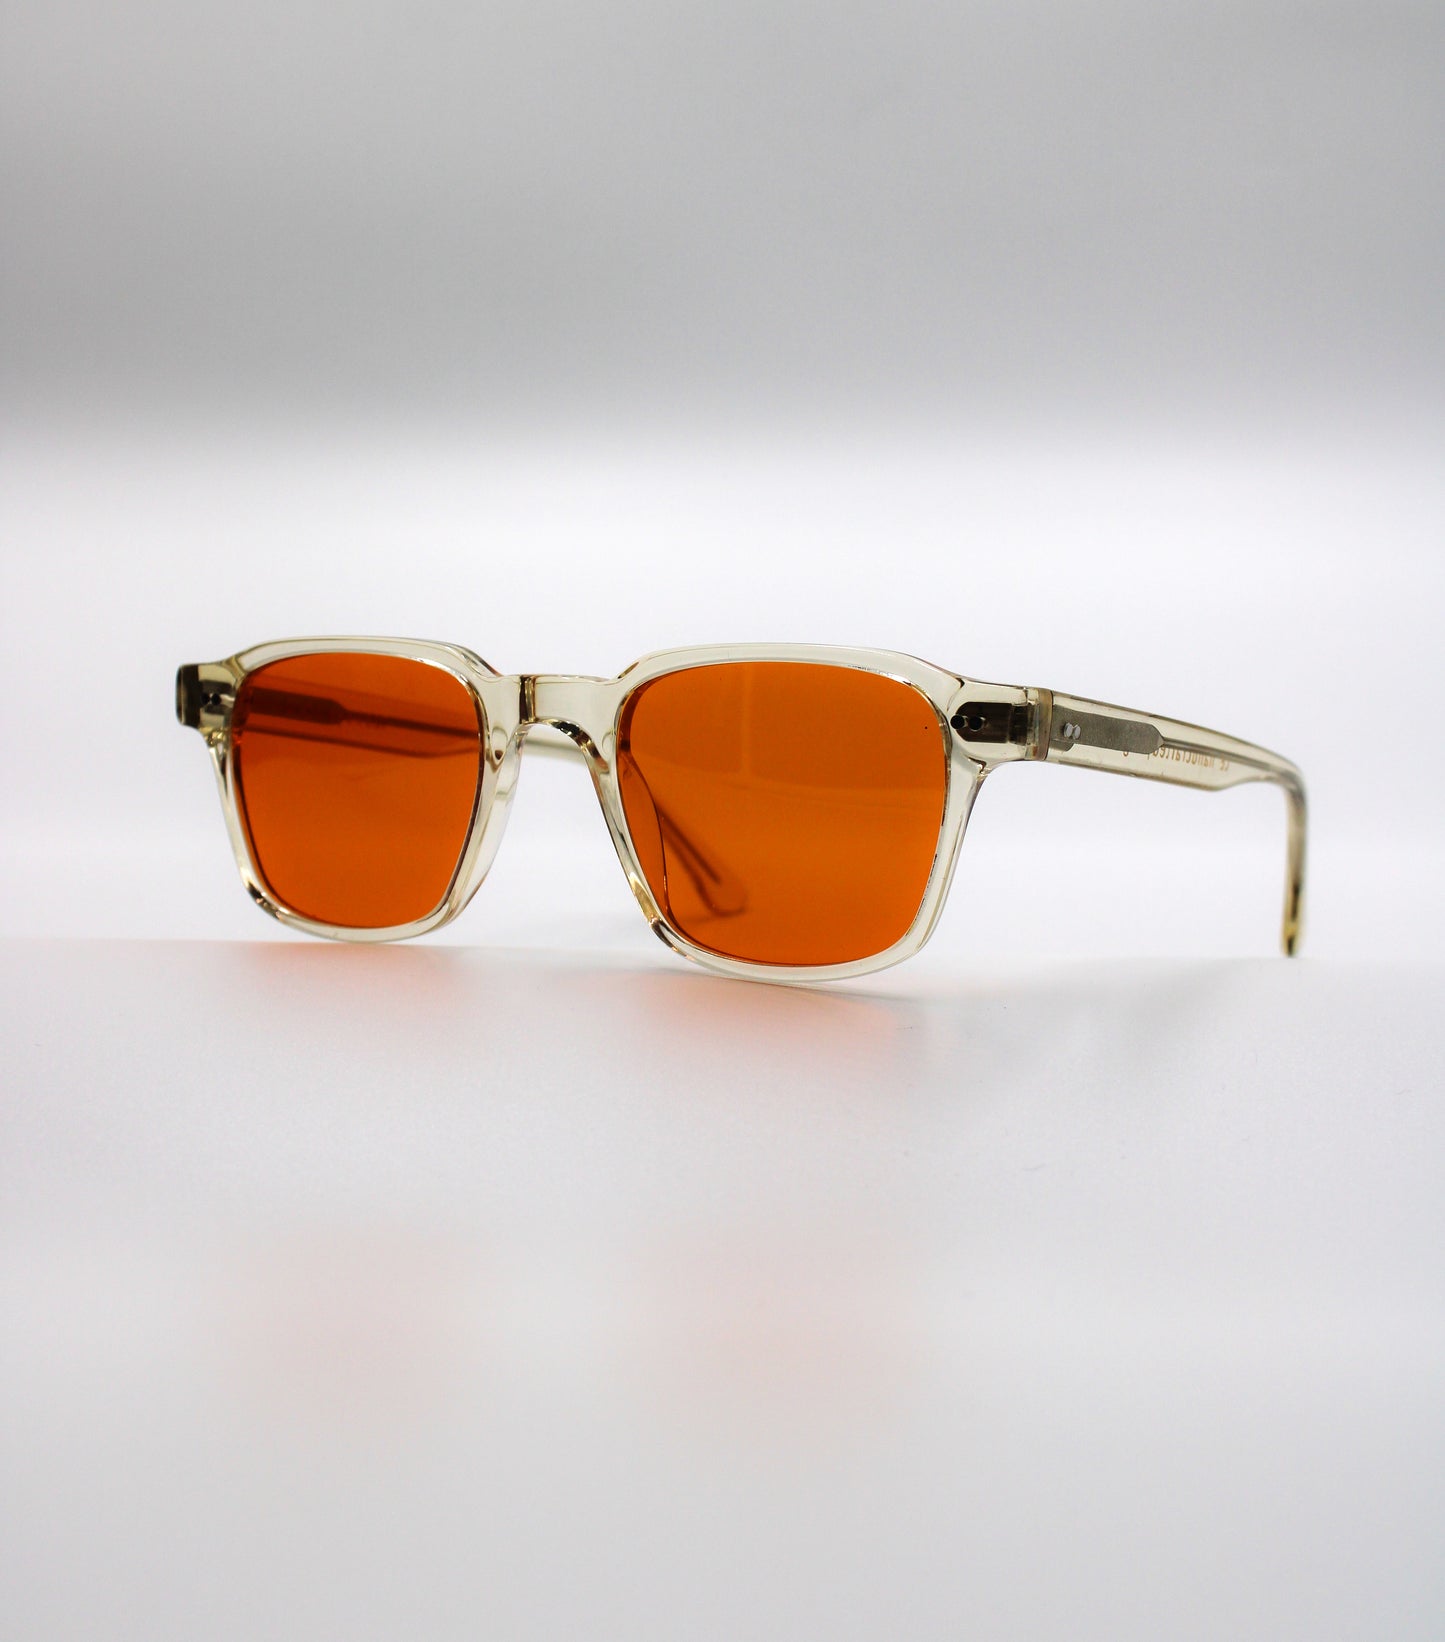 165 Originals Clear Frame with Unique Orange Lenses